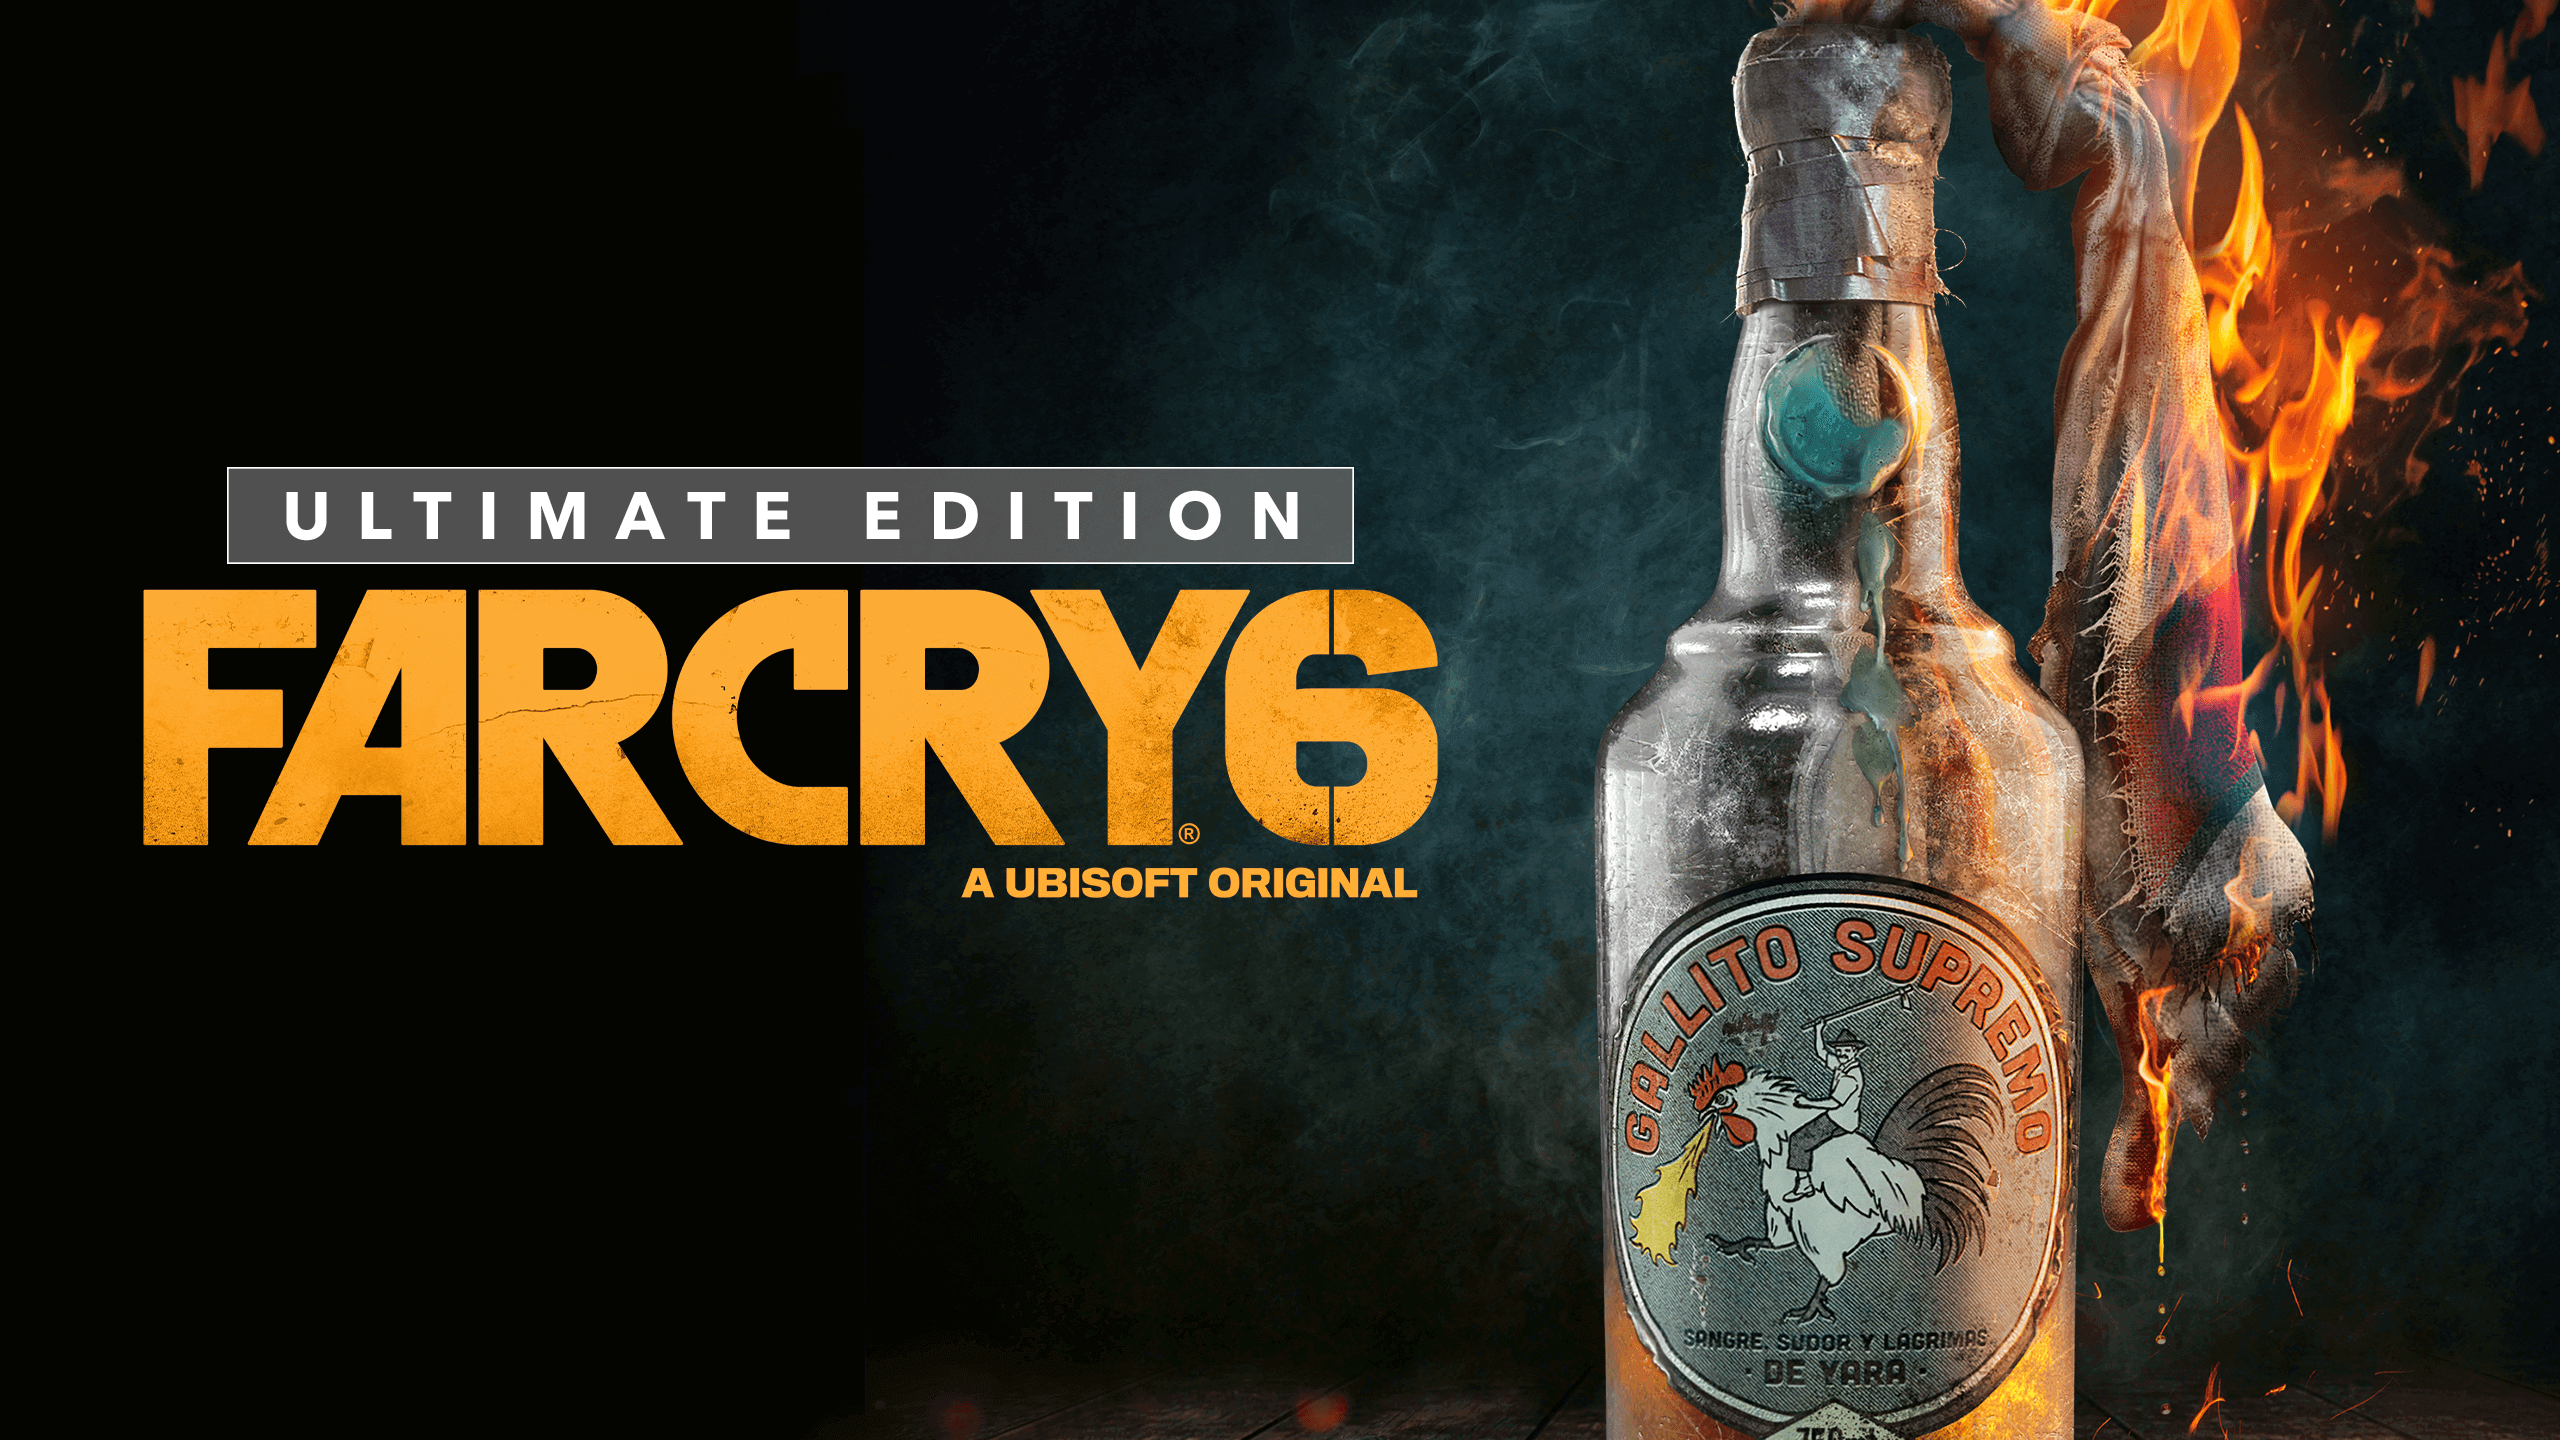 Far Cry 6-EMPRESS